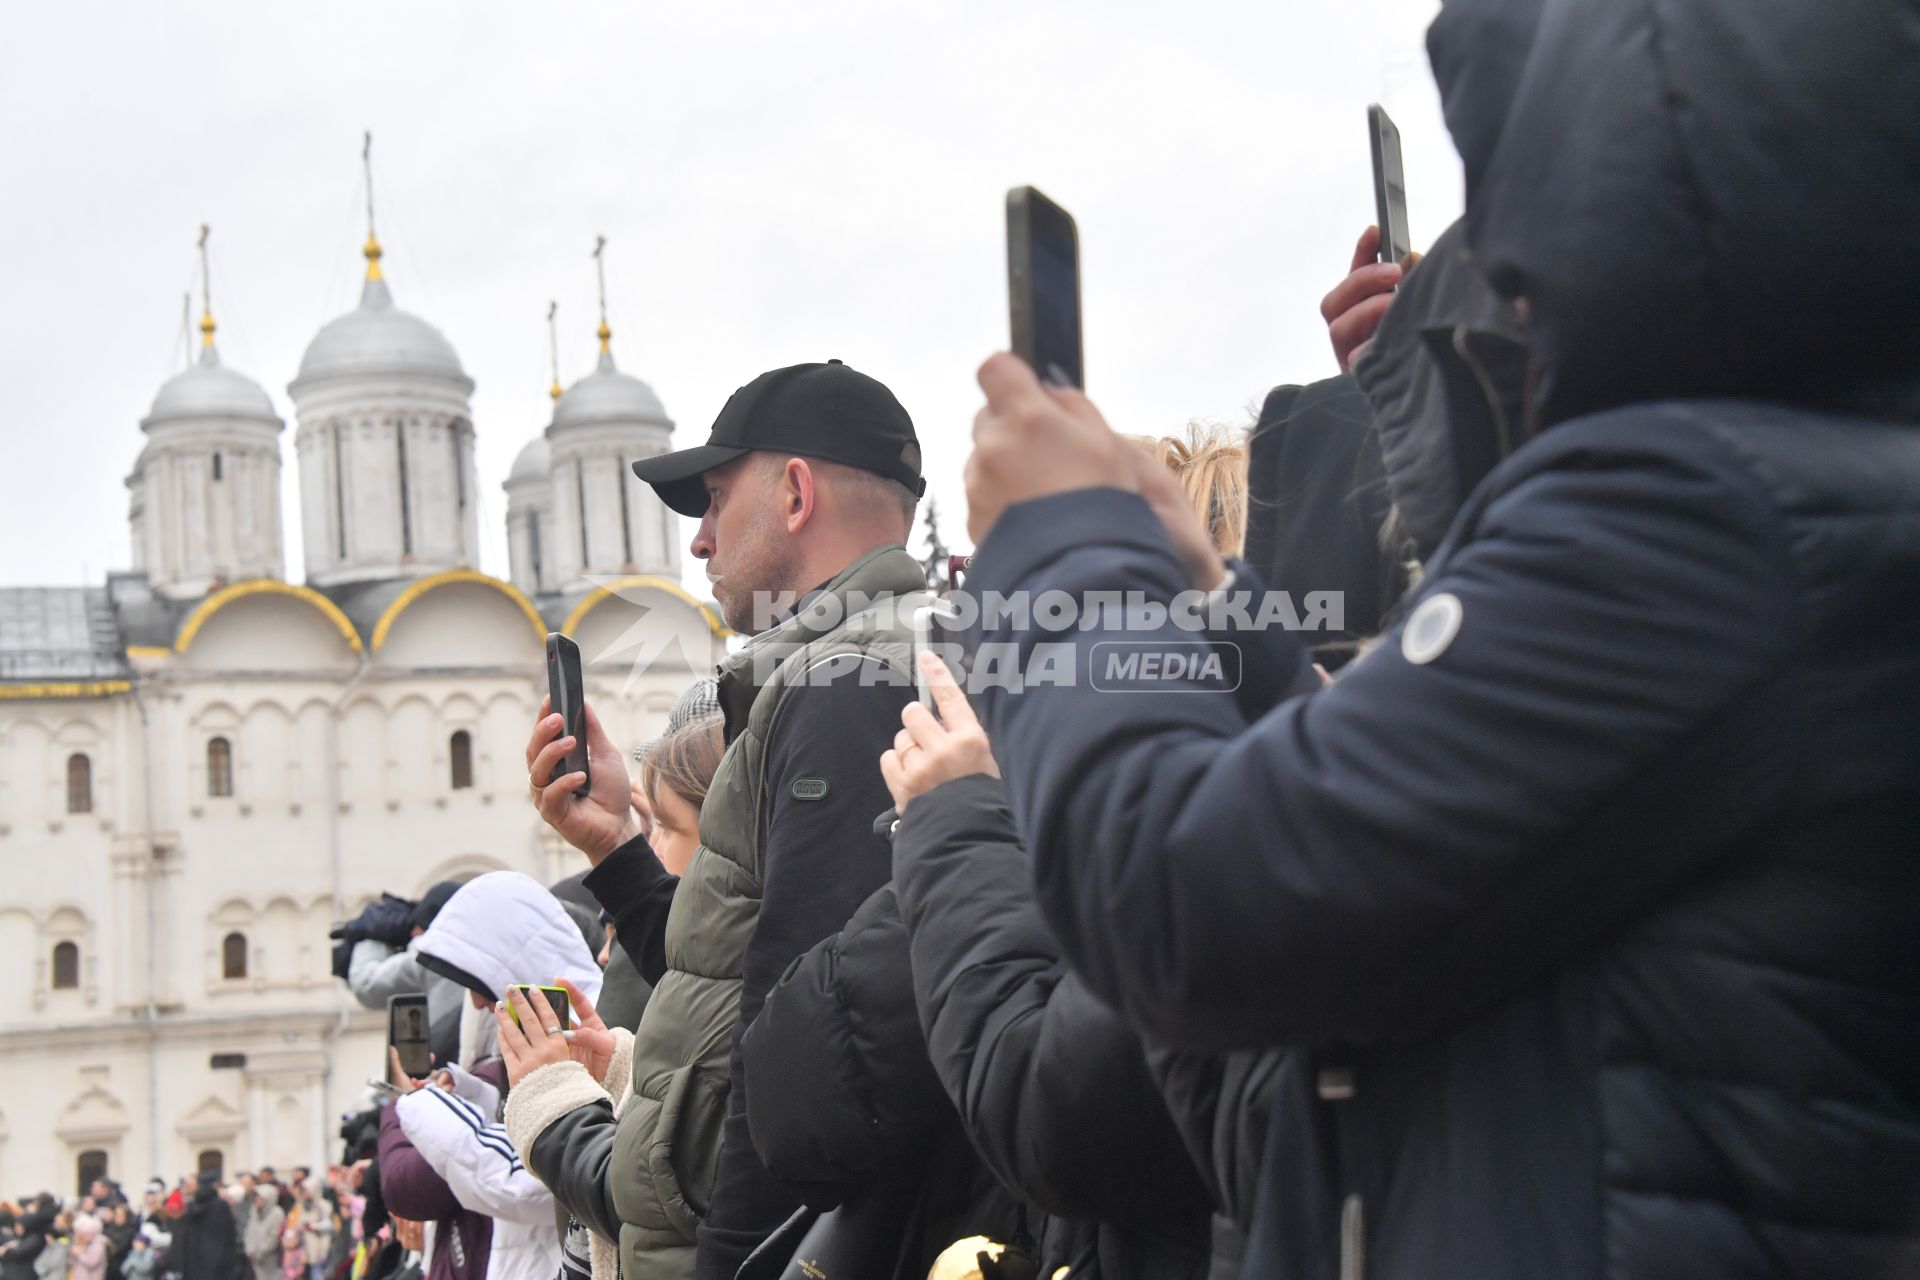 Москва.  Зрители во время церемонии развода пеших и конных караулов на Соборной площади в Кремле.